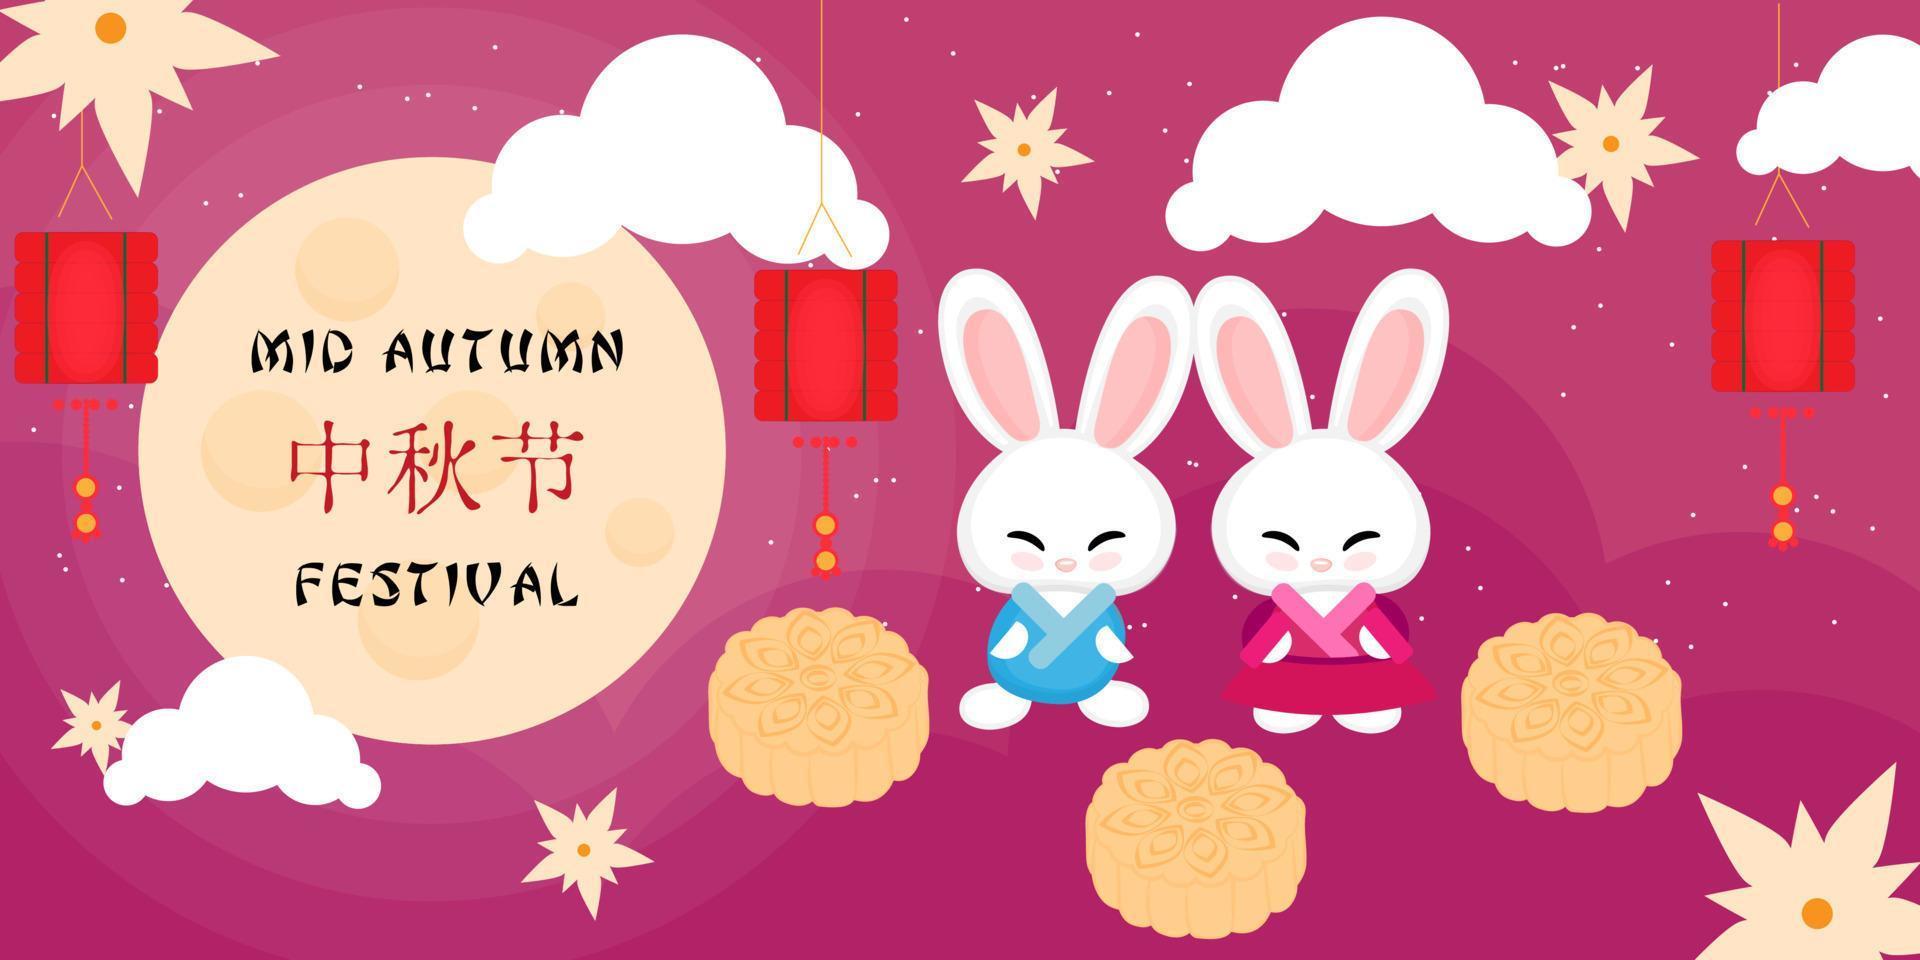 östasiatisk midhöstfestival. måne, månkaka, kaniner, lyktor. semester vektor illustration